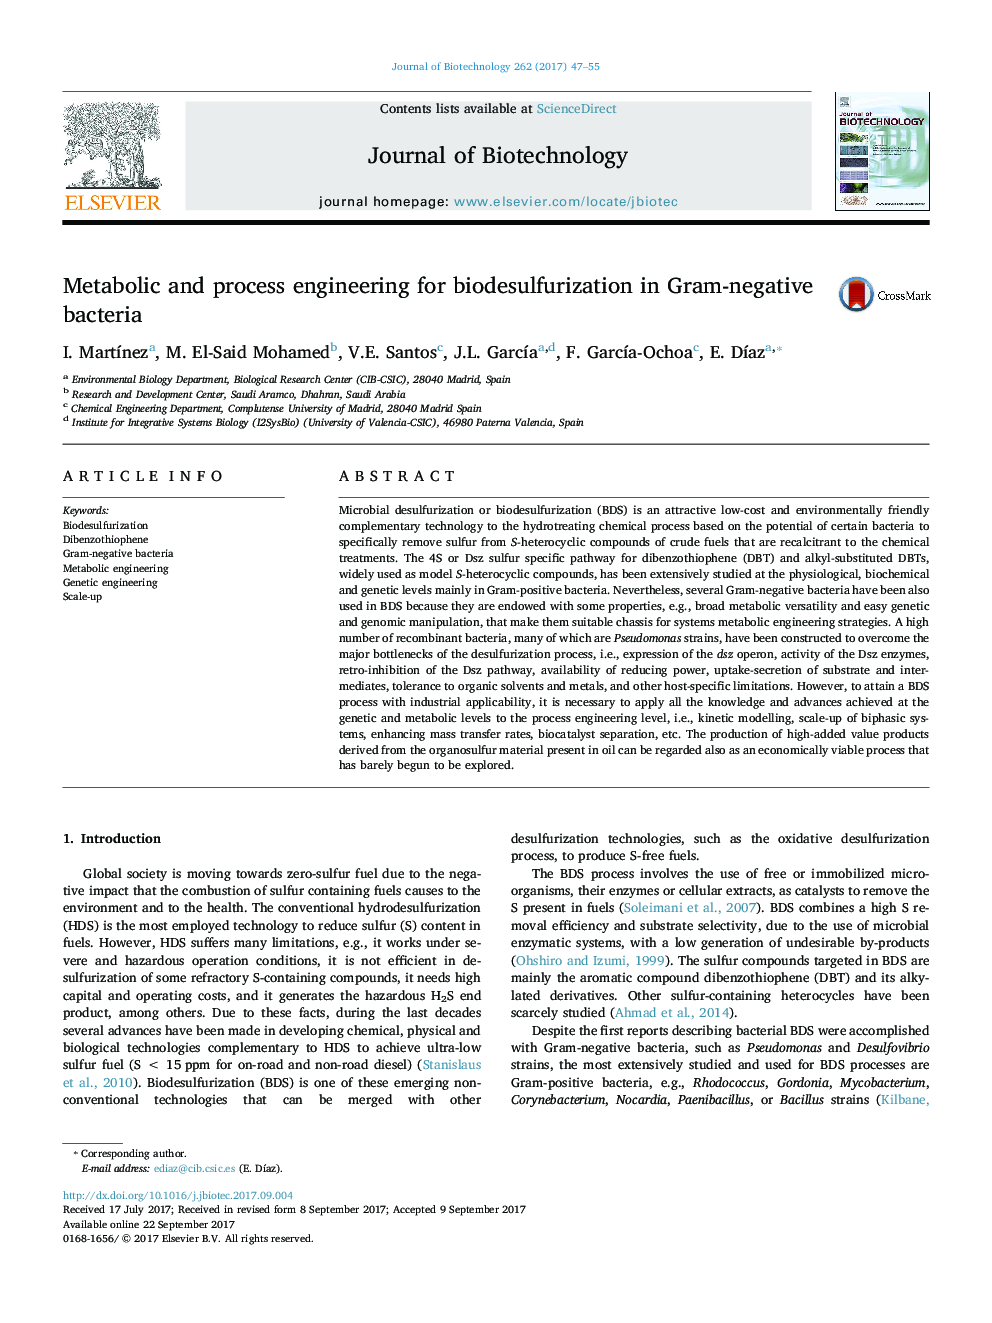 مهندسی متابولیک و فرایند برای بیودزفلزیزاسیون در باکتریهای گرم منفی 